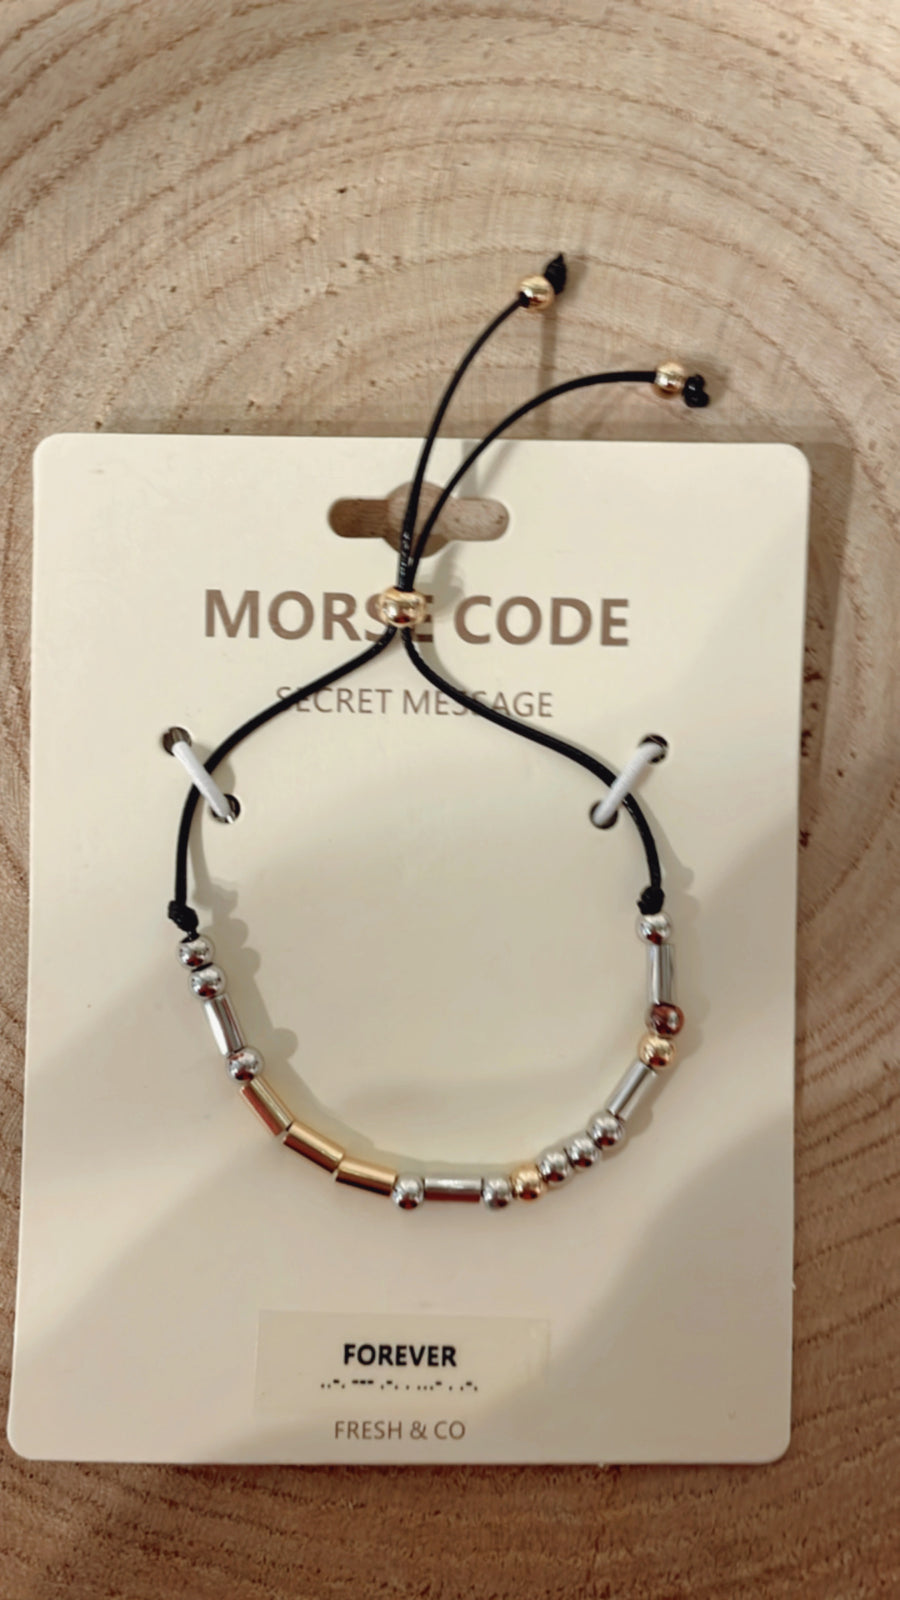 Morse Code "Forever" Bracelet